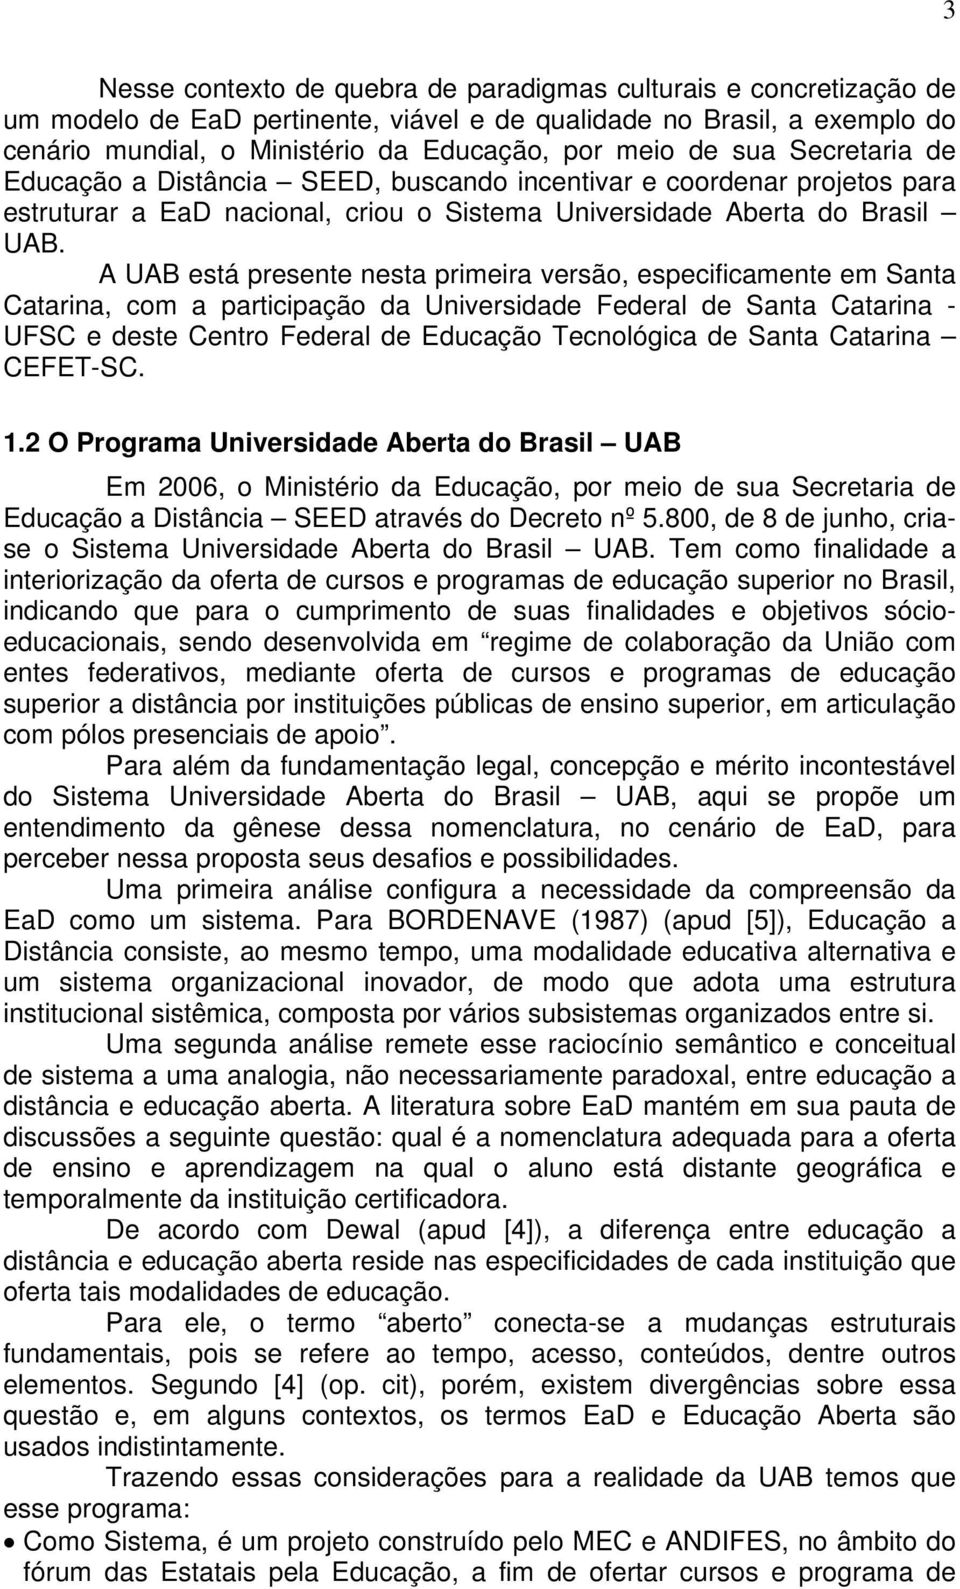 A UAB está presente nesta primeira versão, especificamente em Santa Catarina, com a participação da Universidade Federal de Santa Catarina - UFSC e deste Centro Federal de Educação Tecnológica de